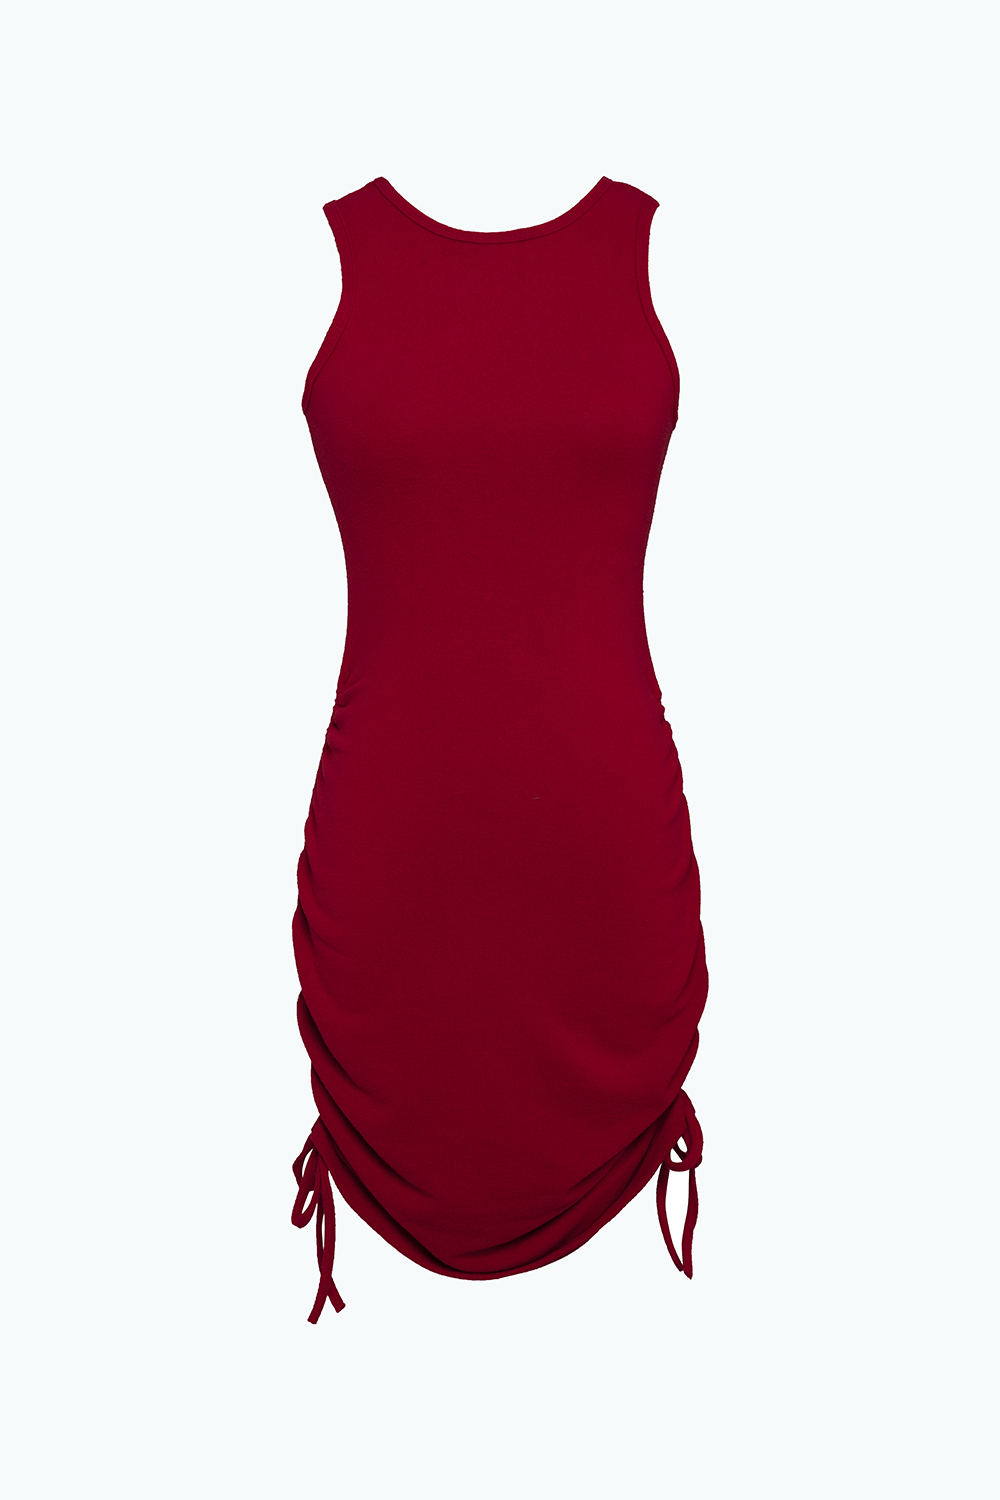 Váy Body Nữ, Đầm Ôm Khoét Ngực Dây Rút 2 Bên Hông Cá Tính | Lazada.vn